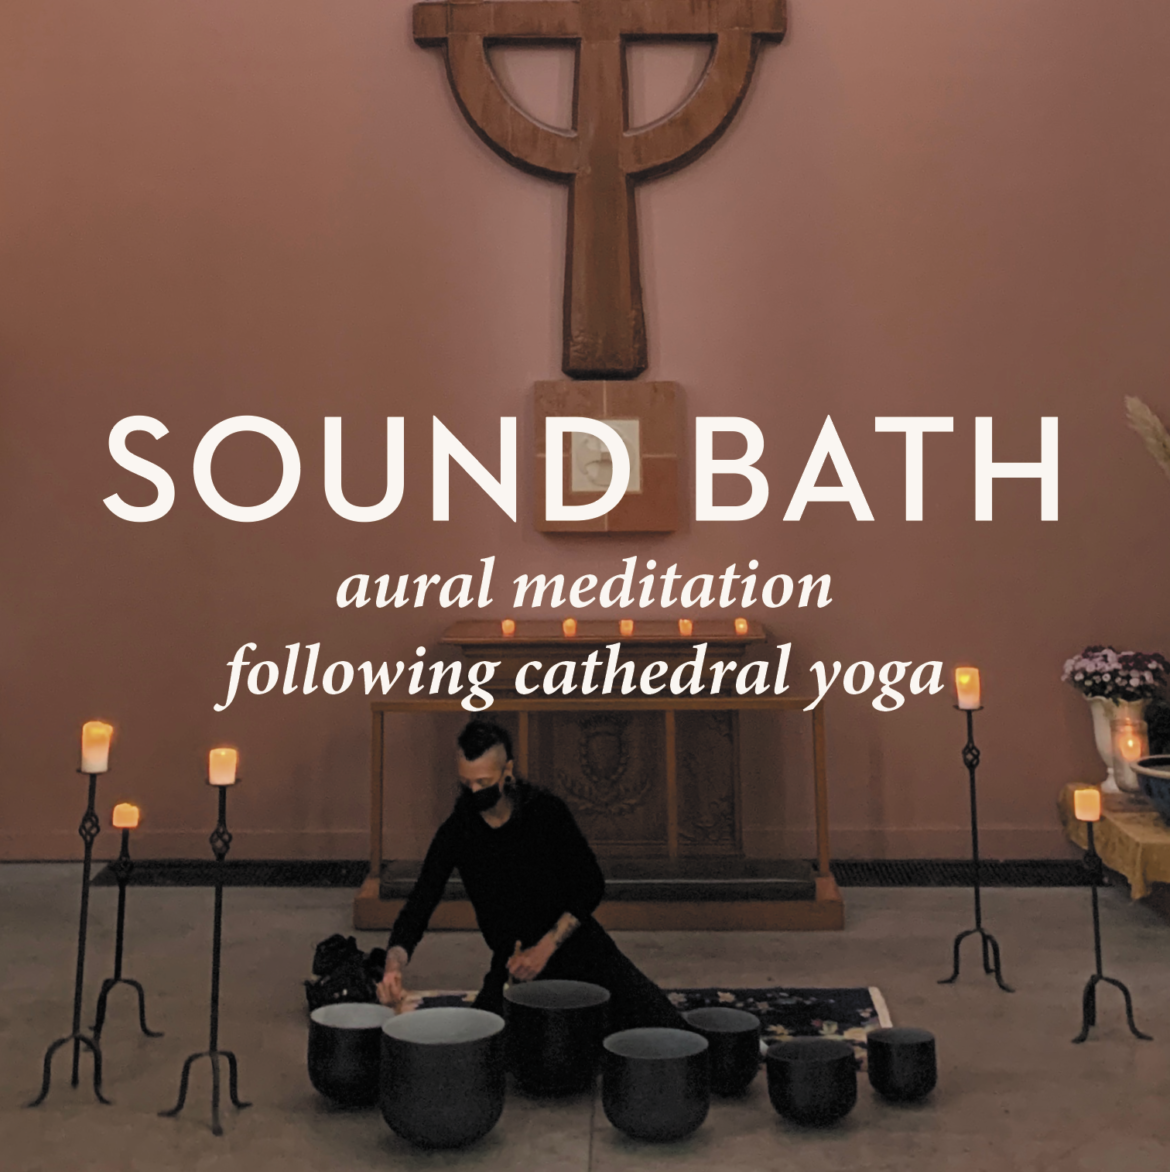 Sound Bath Aural Meditation by Black Moon Company